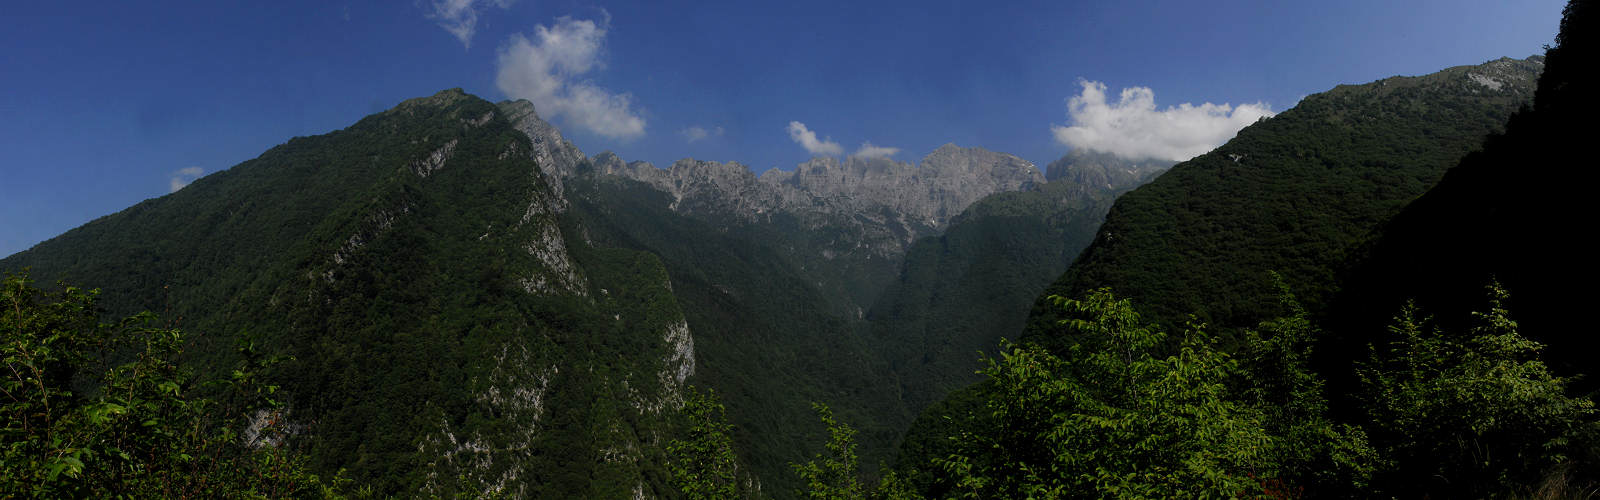 Alta valle dell'Ardo, monte Schiara, Parco Nazionale Dolomiti Bellunesi